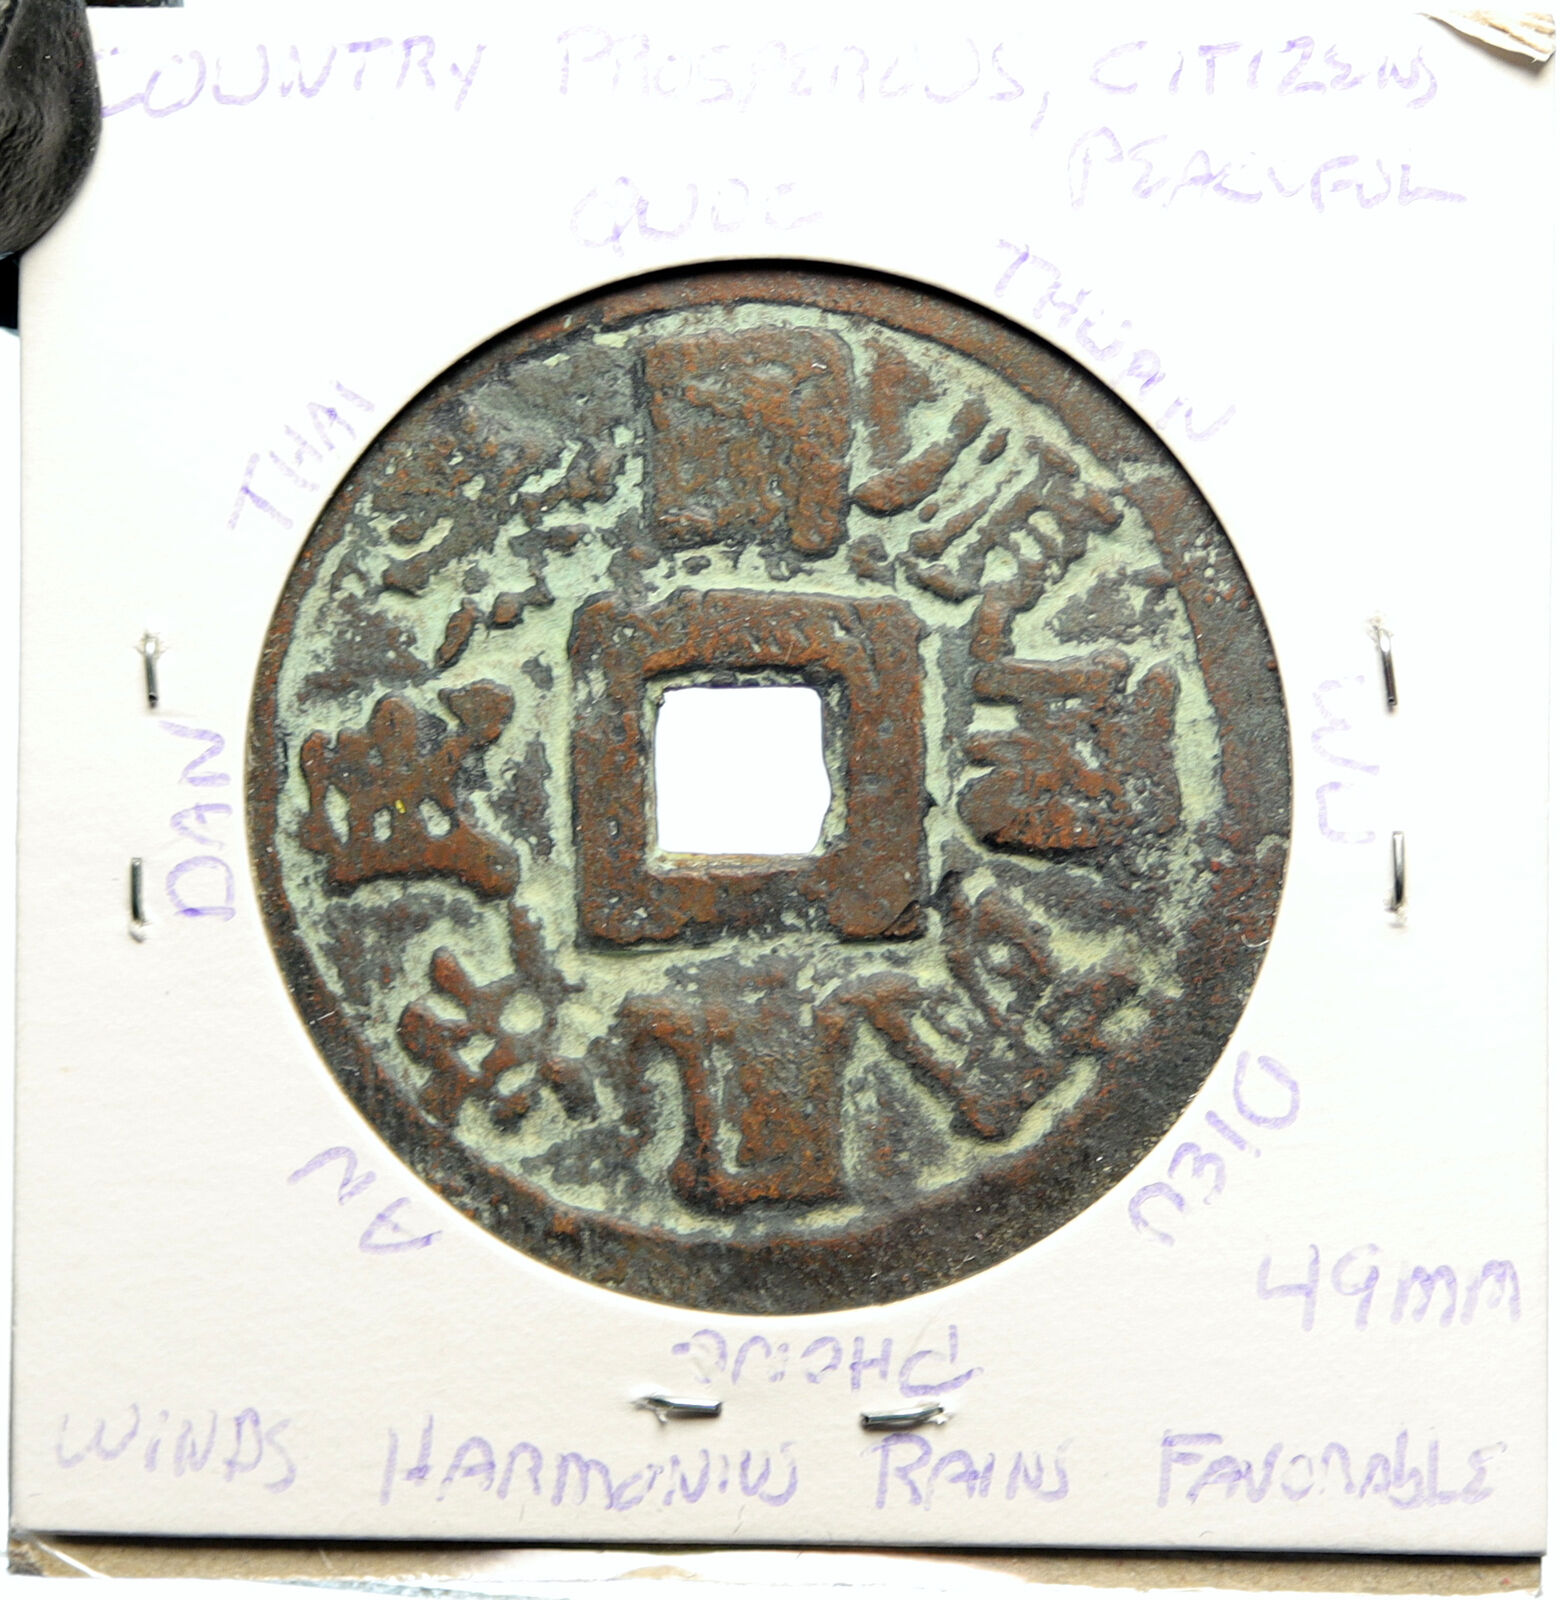 1916-25 VIETNAM Nguyen Dynasty HOANG TONG Thai Dinh Thong Bao Cash Coin i100126